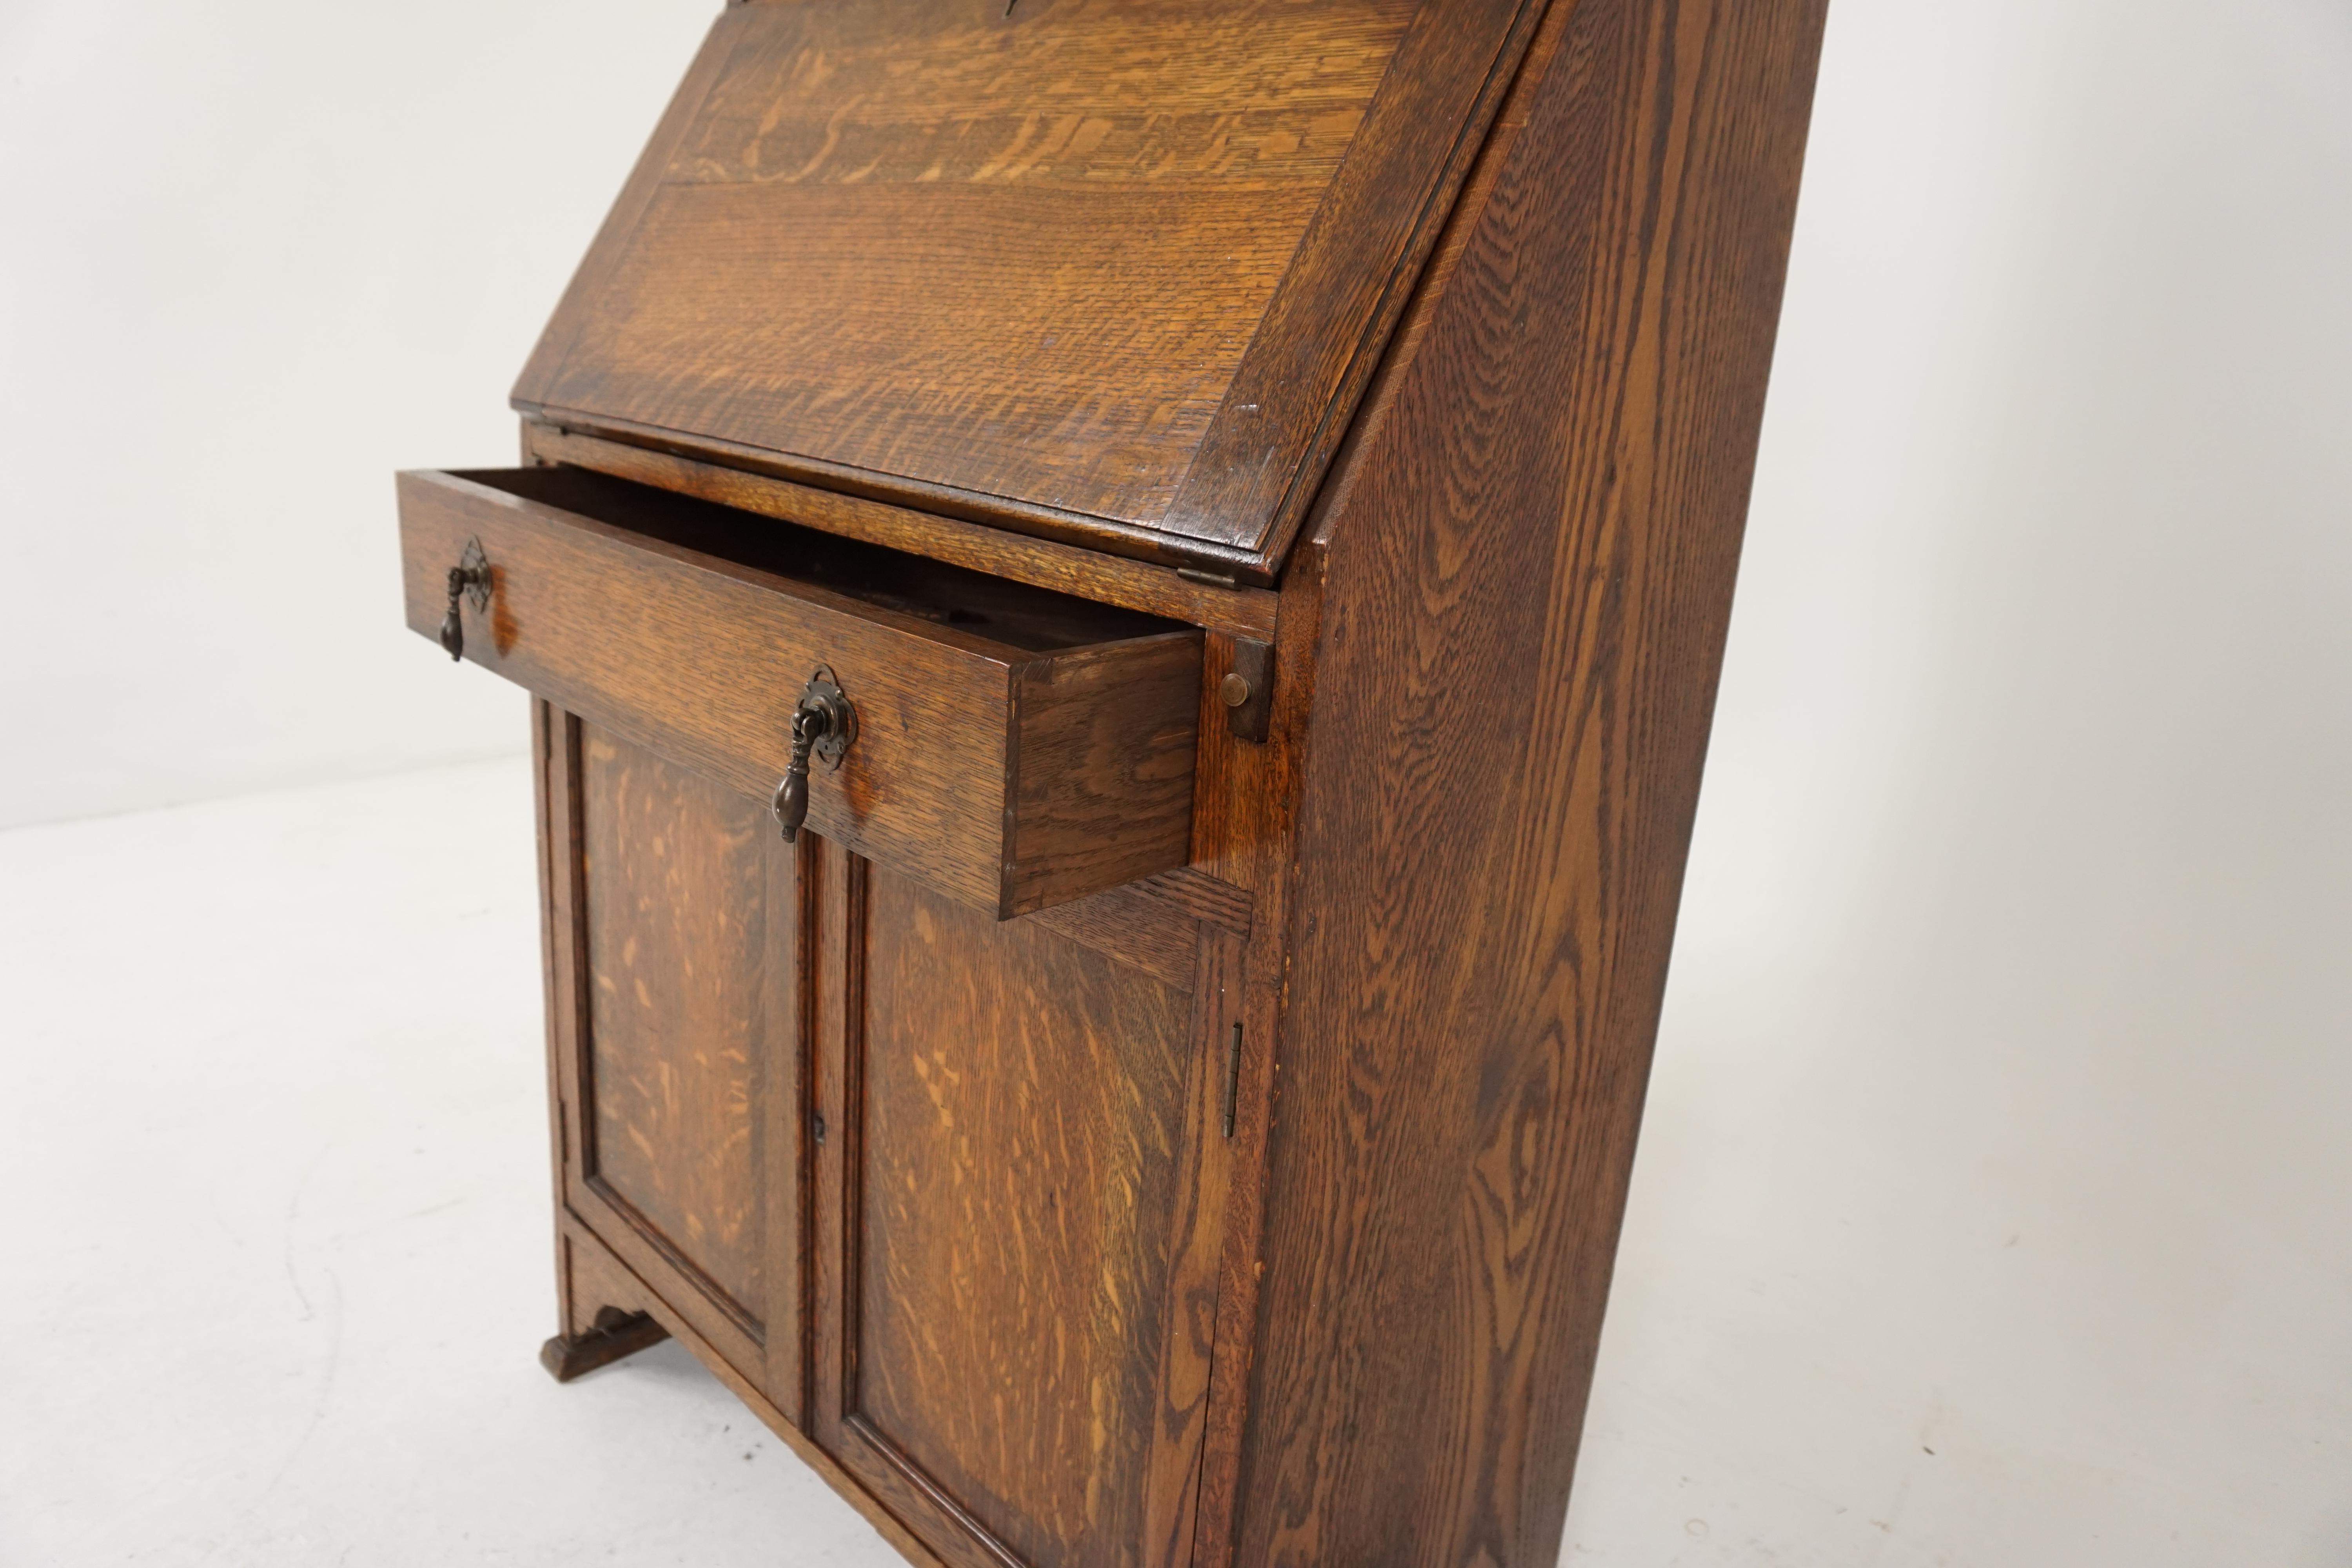 Scottish Antique Oak Desk, Drop Front Desk with Bookcase Top, Scotland 1910, B1799